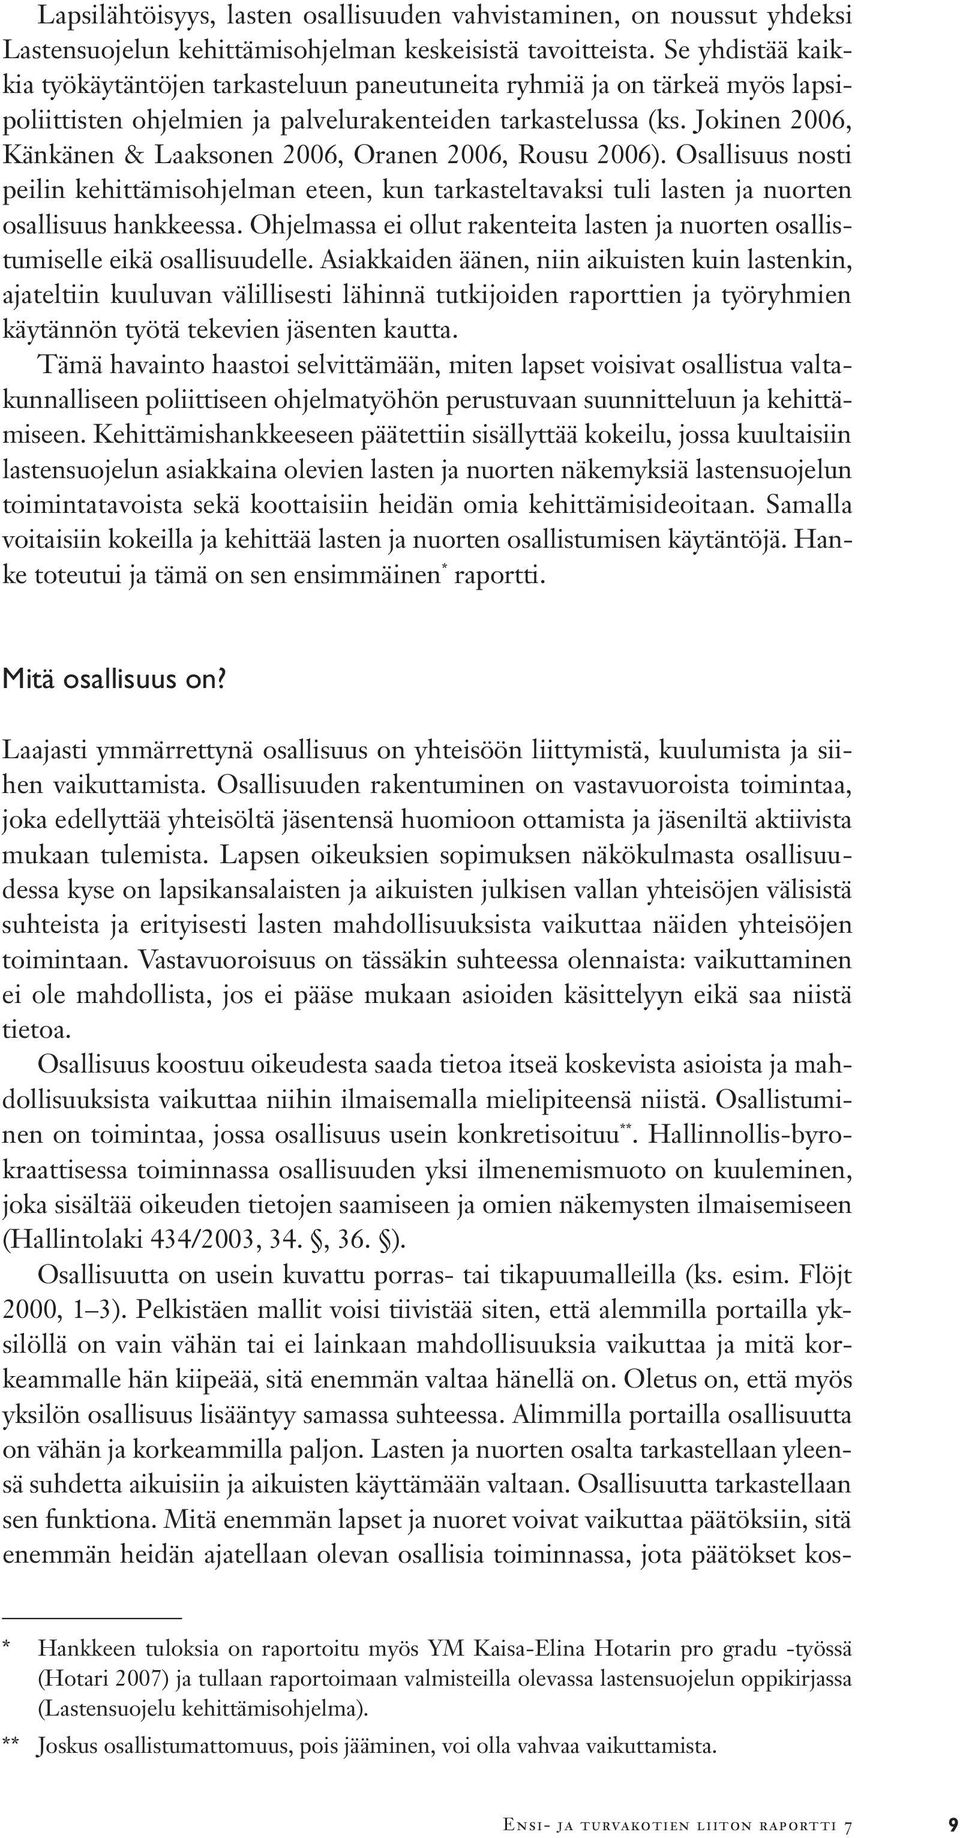 Jokinen 2006, Känkänen & Laaksonen 2006, Oranen 2006, Rousu 2006). Osallisuus nosti peilin kehittämisohjelman eteen, kun tarkasteltavaksi tuli lasten ja nuorten osallisuus hankkeessa.